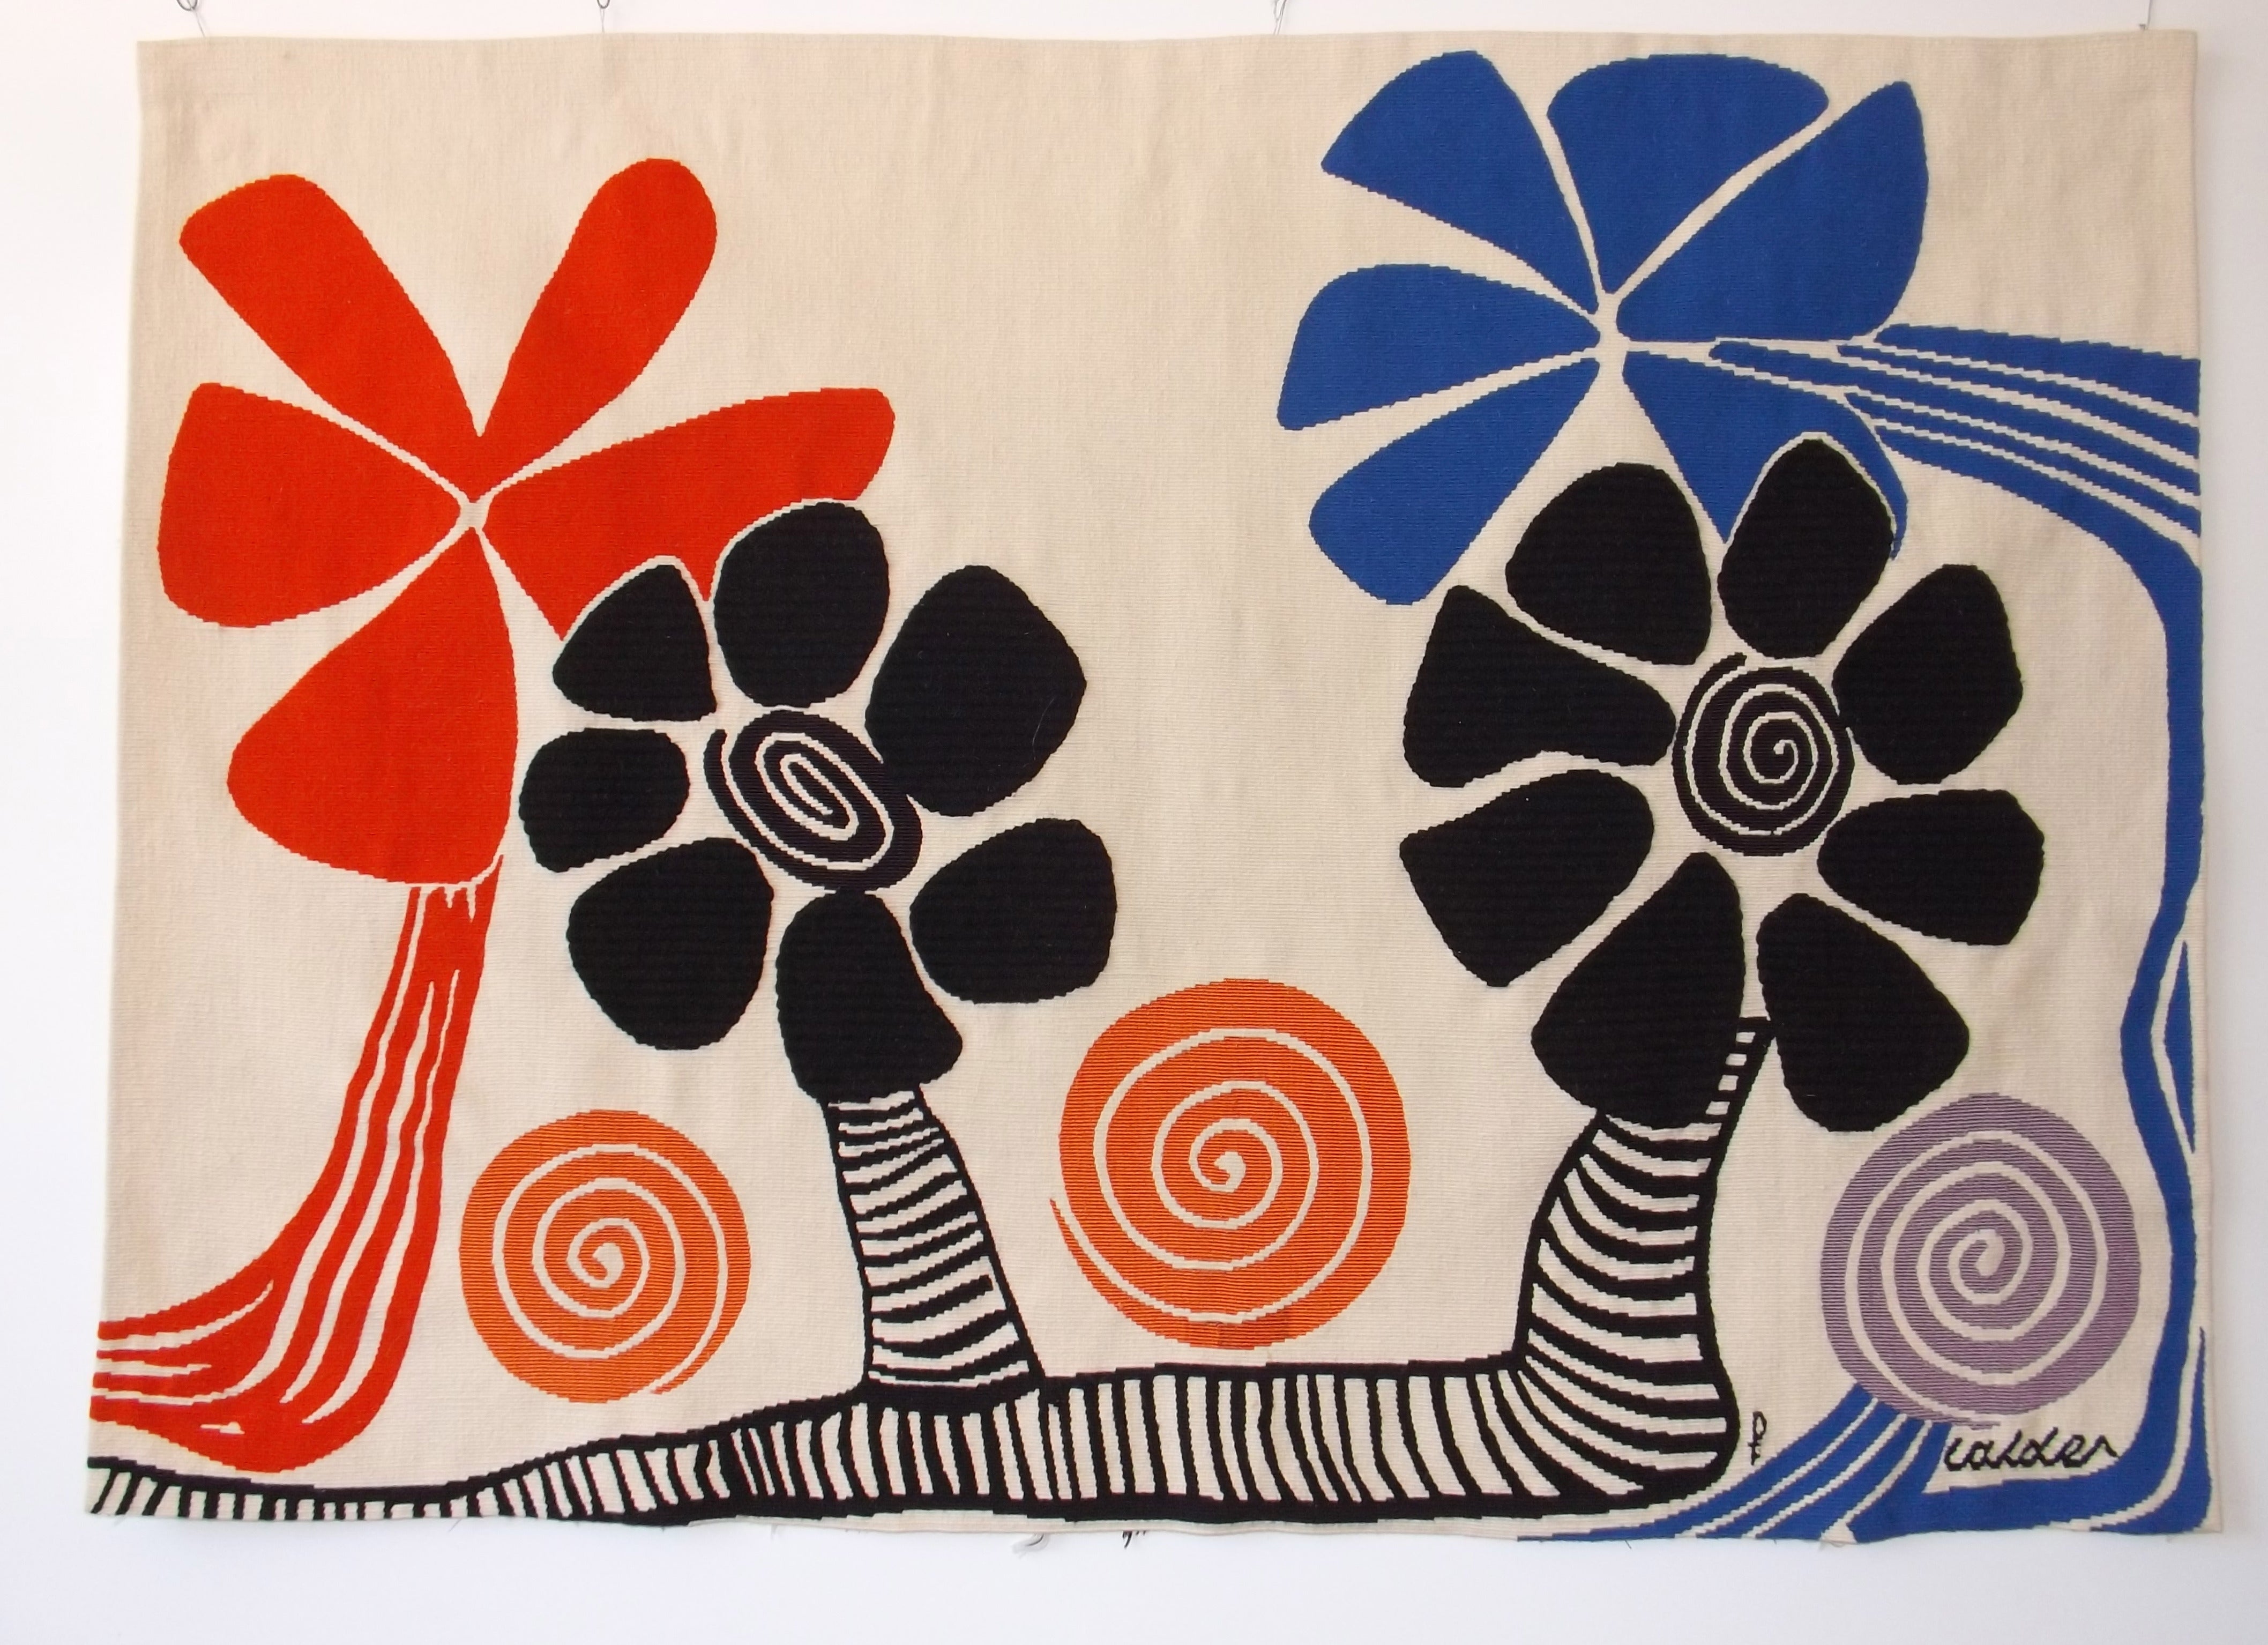 Alexander Calder "Flowers" Aubusson Tapestry